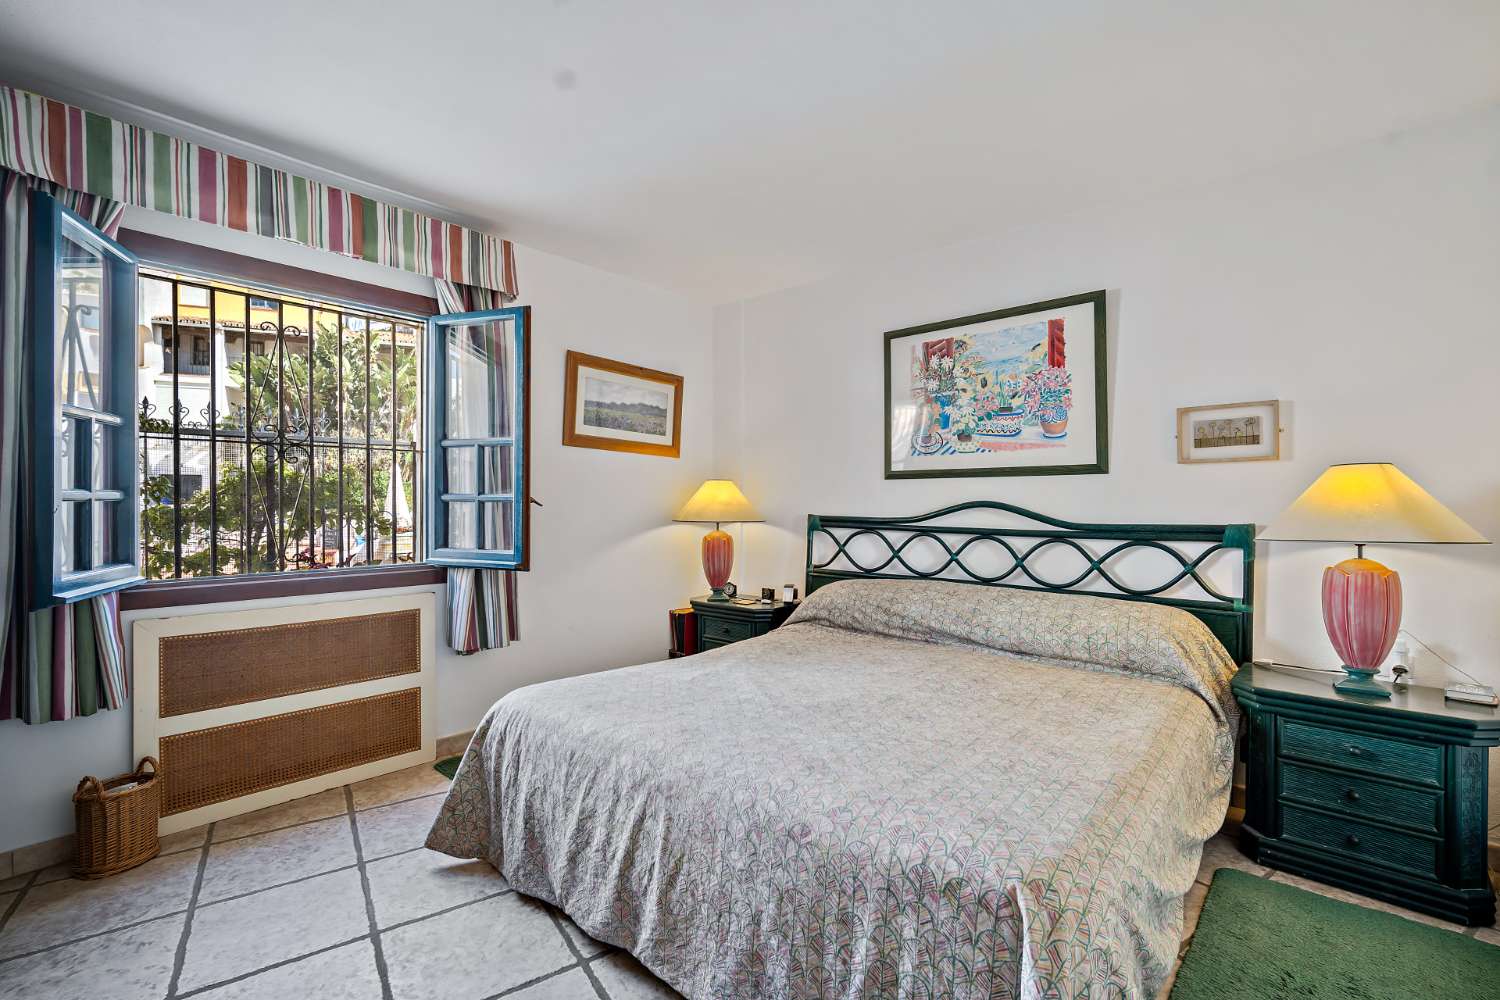 4 غرف نوم, 3 شقة بحمامات للبيع في بويرتو دي كابوبينو, شرق ماربيا